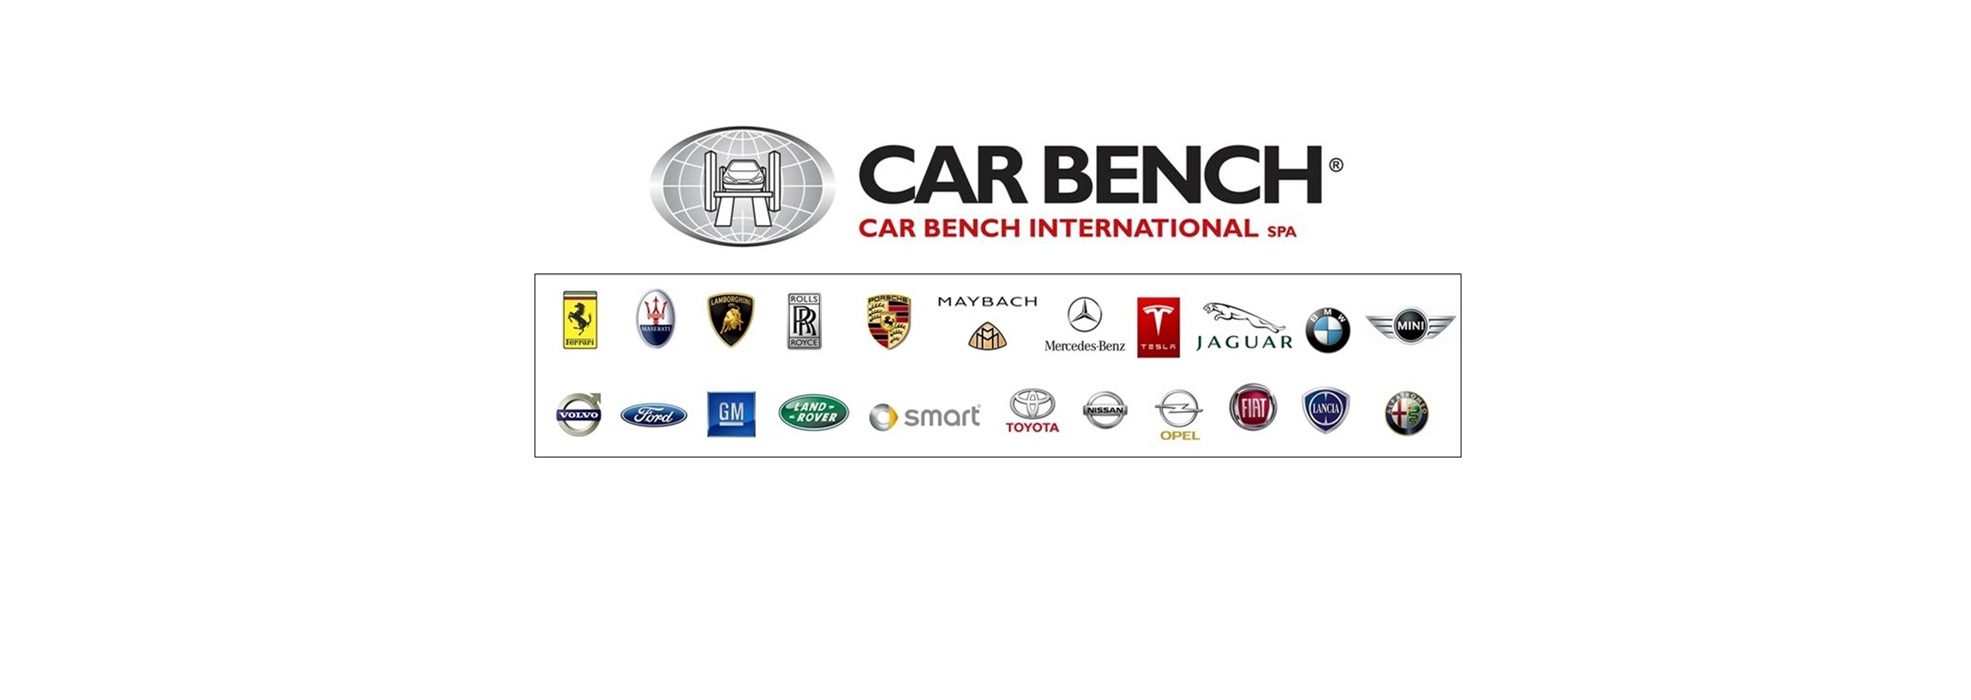 Car Bench Built on OEM Standards